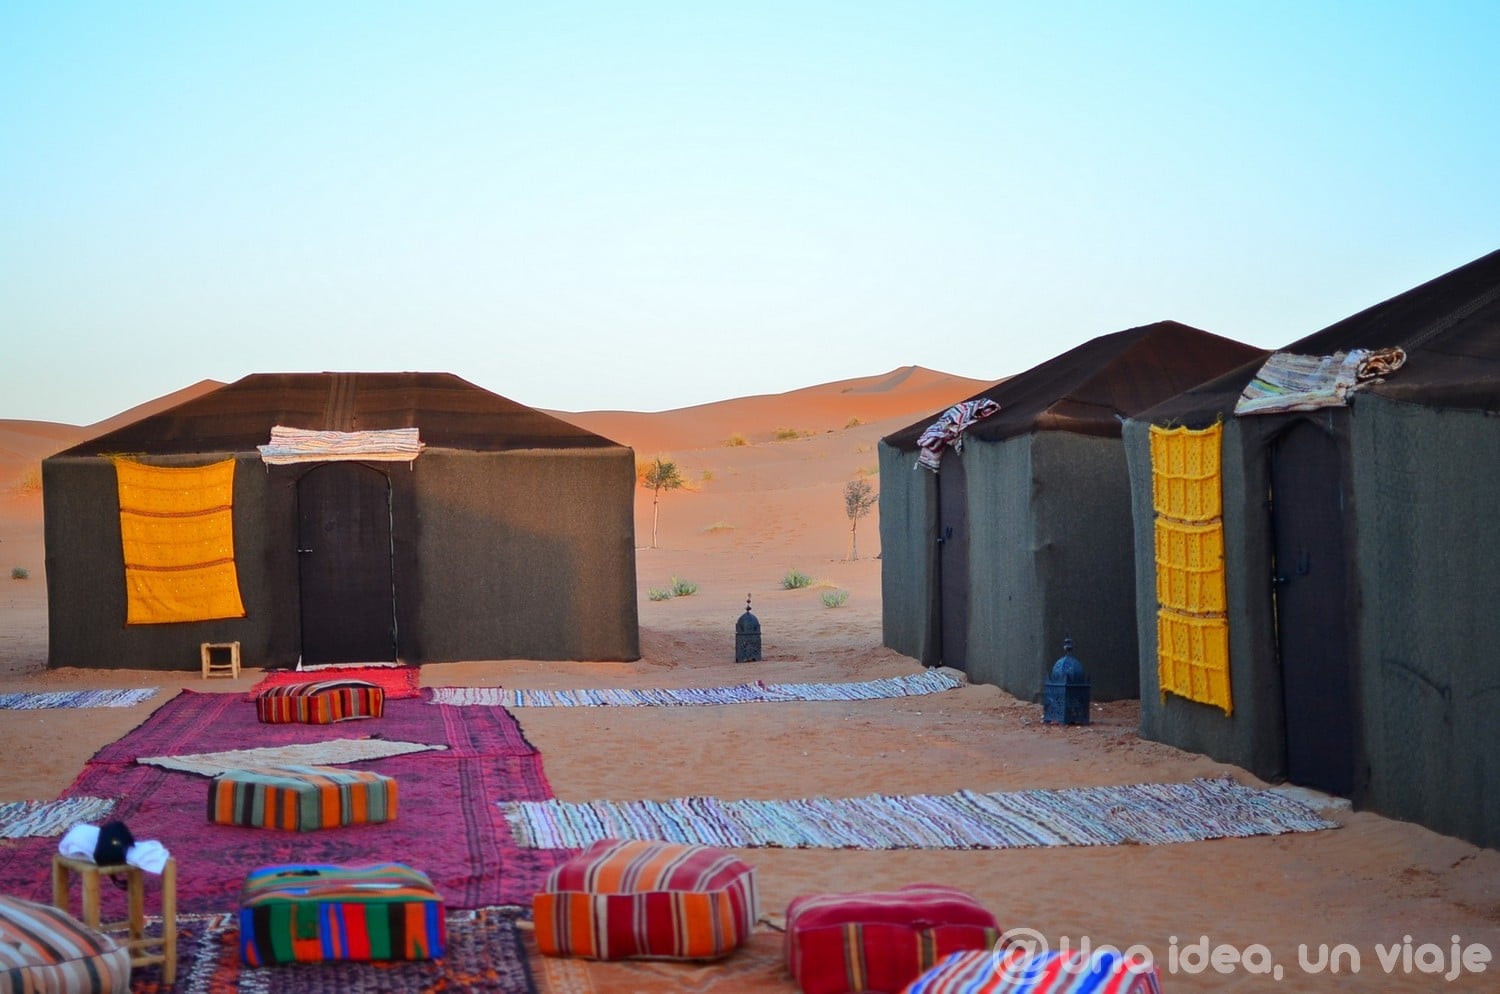 marrakech-marruecos-excursion-ruta-desierto-sahara-unaideaunviaje-37